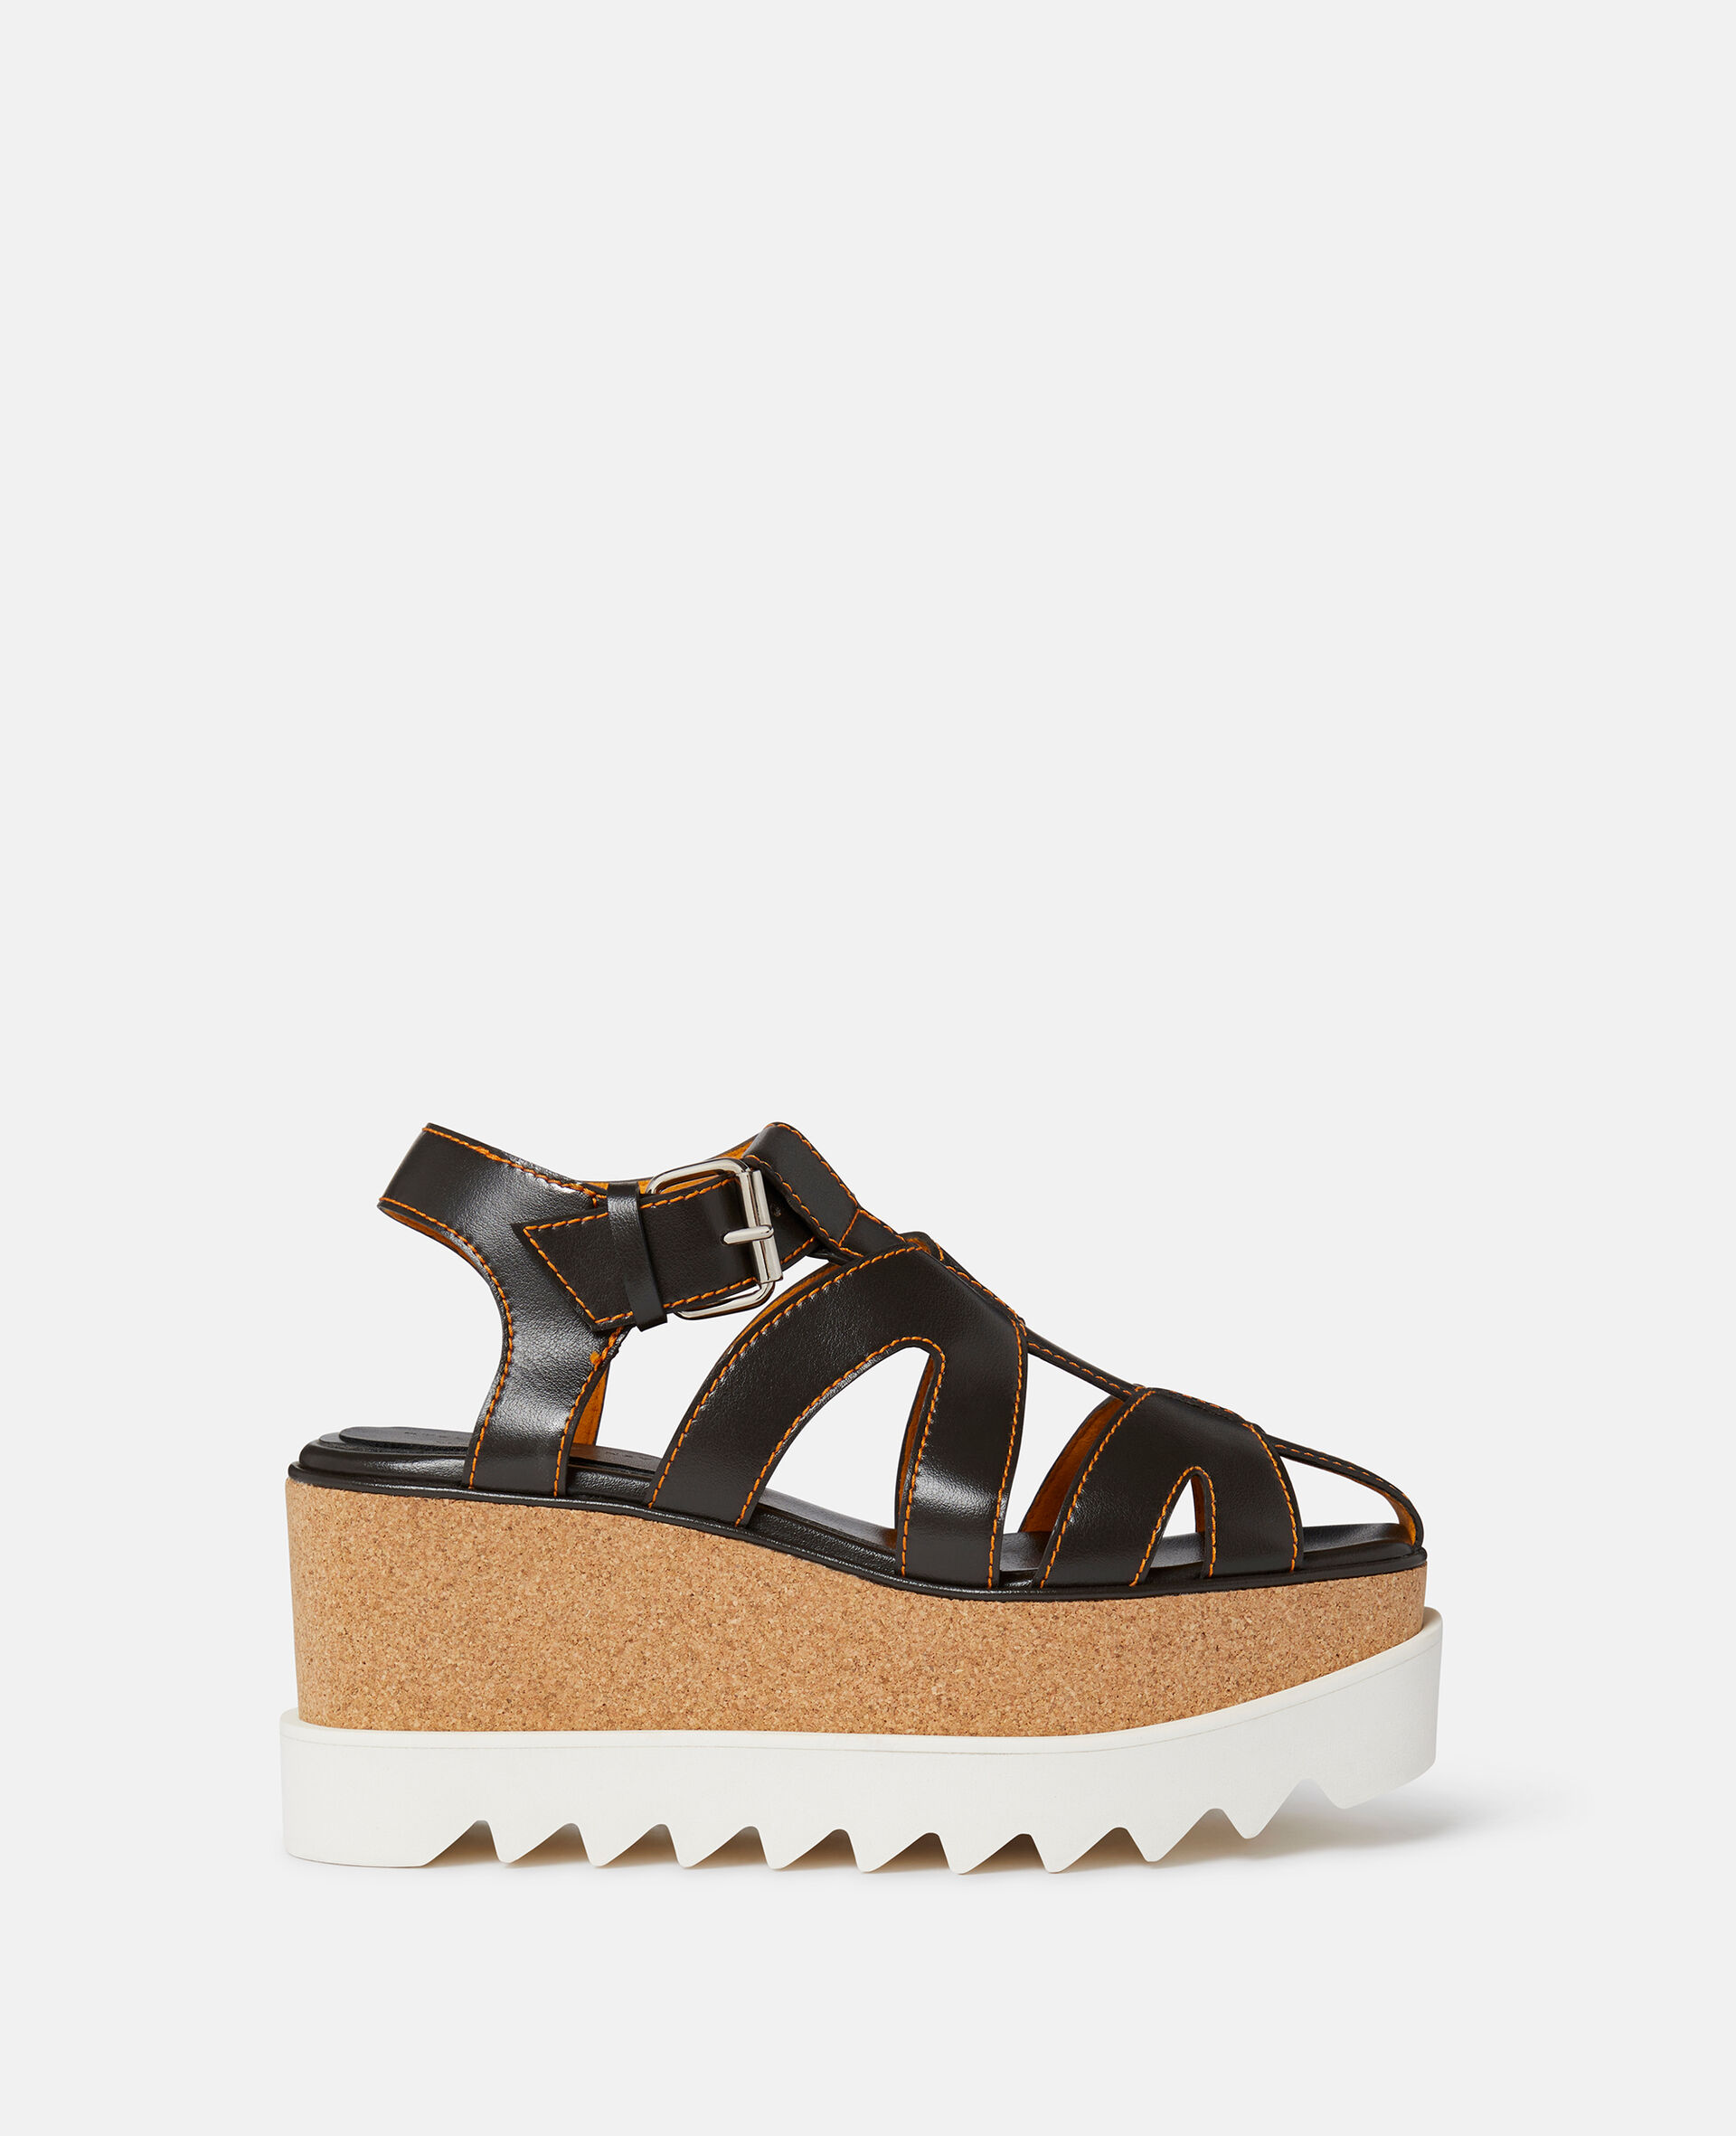 Elyse Veuve Clicquot Platform Sandals-Brown-large image number 0